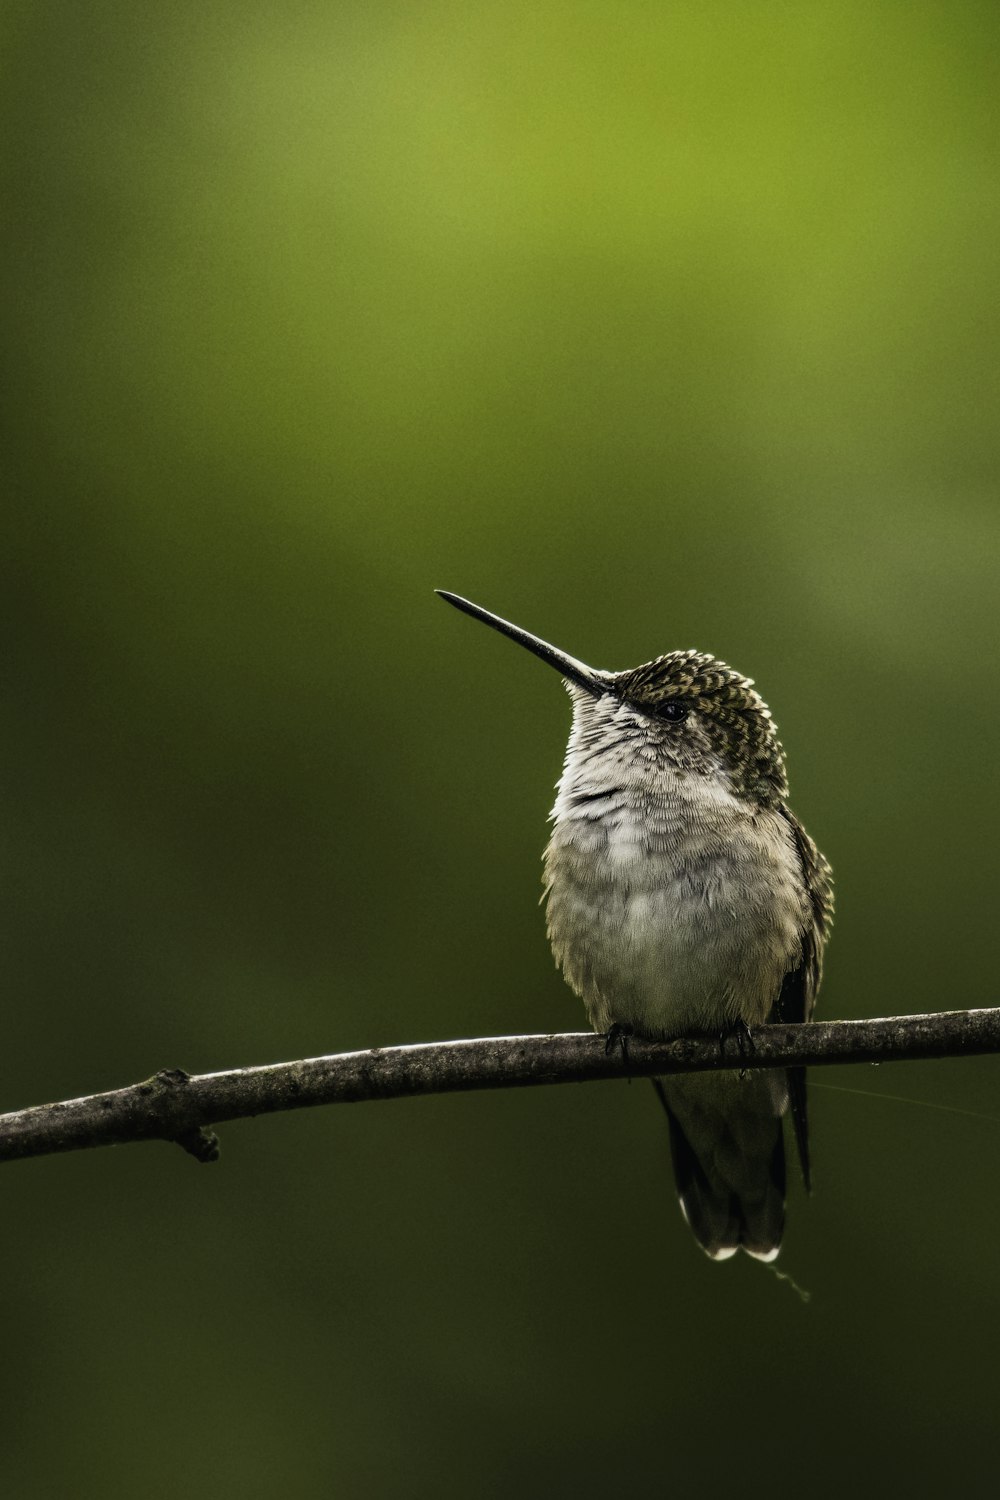 Un pequeño pájaro sentado en un cable con un fondo borroso